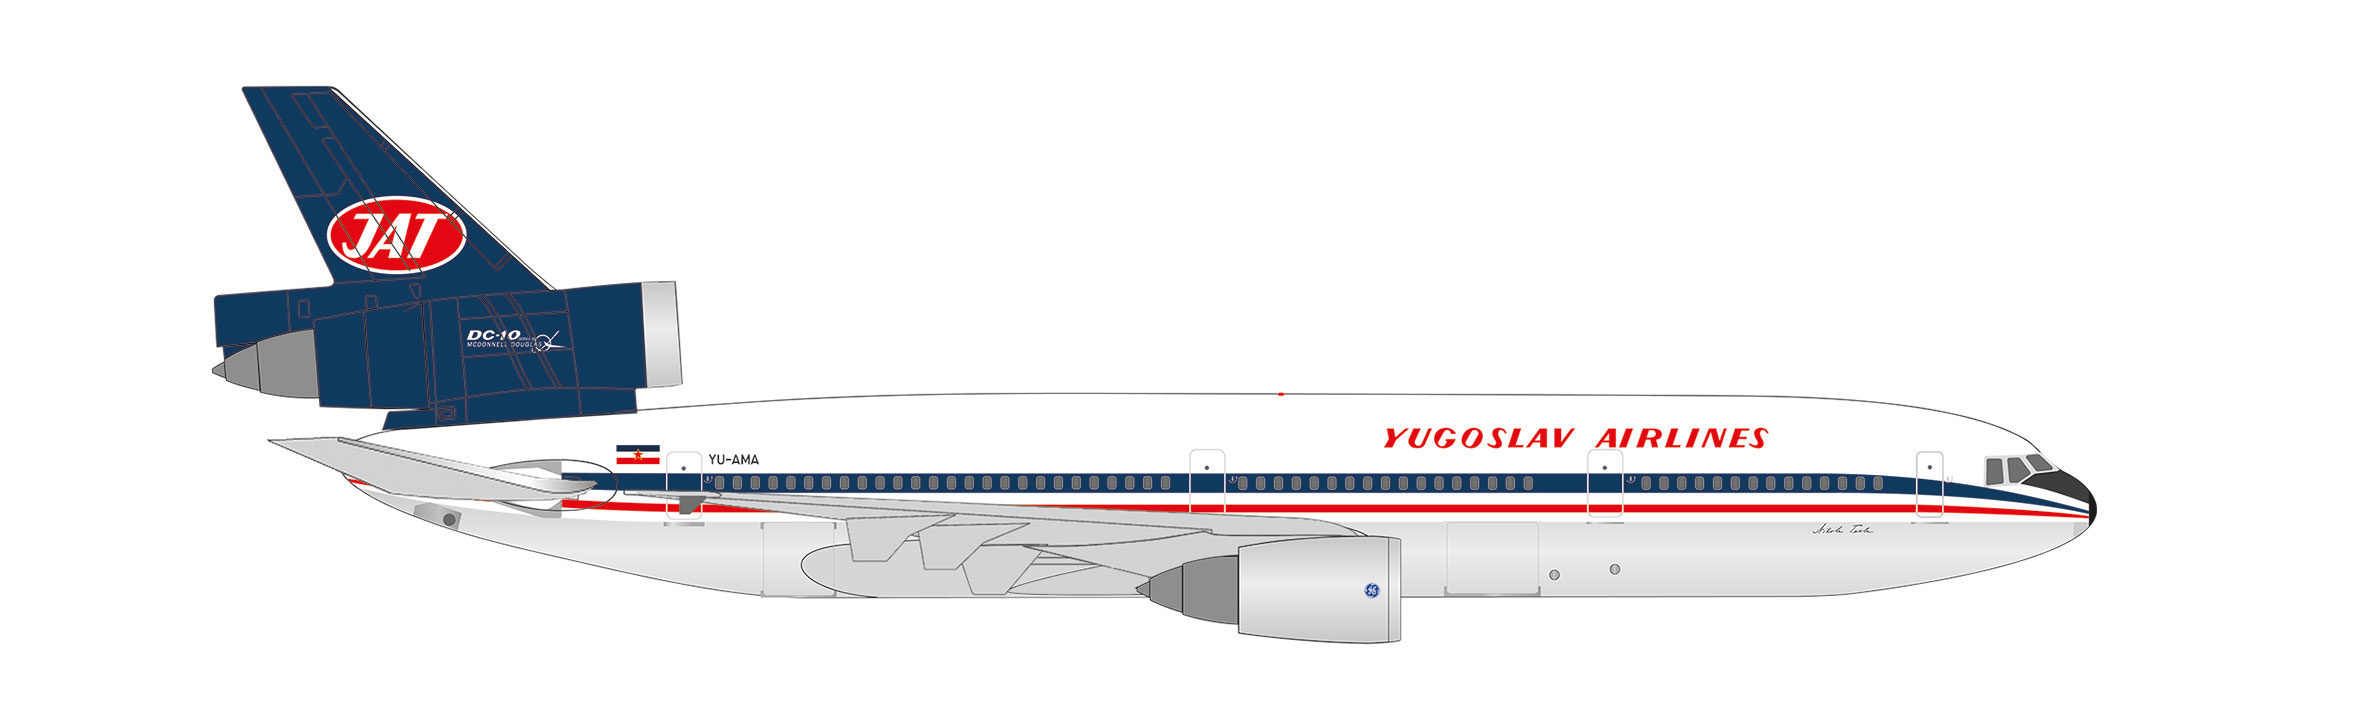 JAT - Yugoslav Airlines McDon 